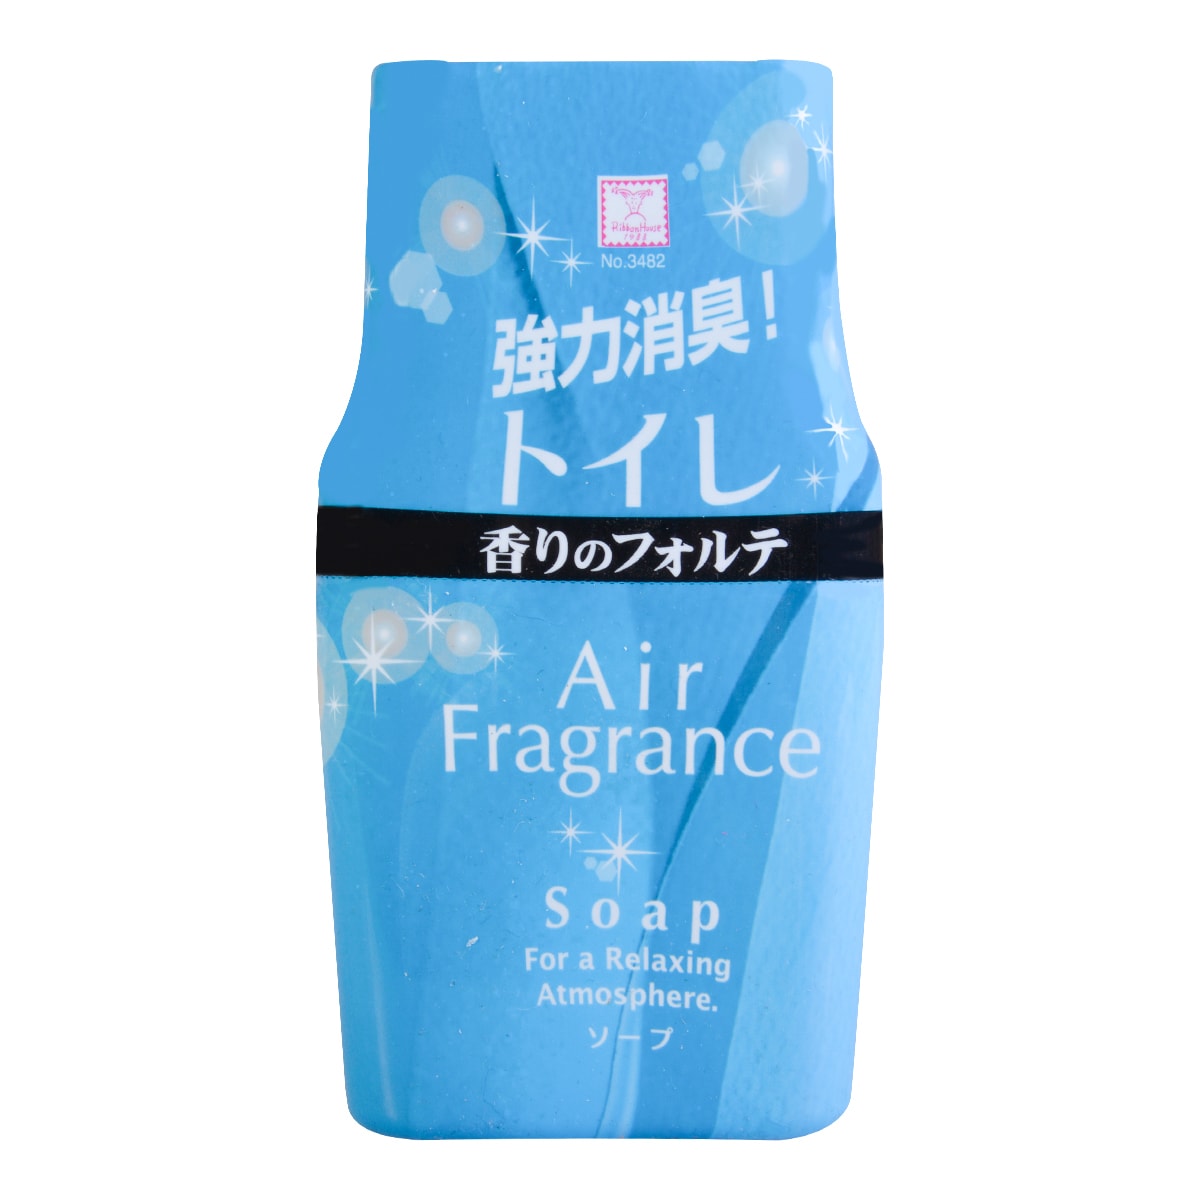 日本KOKUBO小久保 厕所消臭剂 清新肥皂香 200ml 空气清新 怎么样 - 亚米网